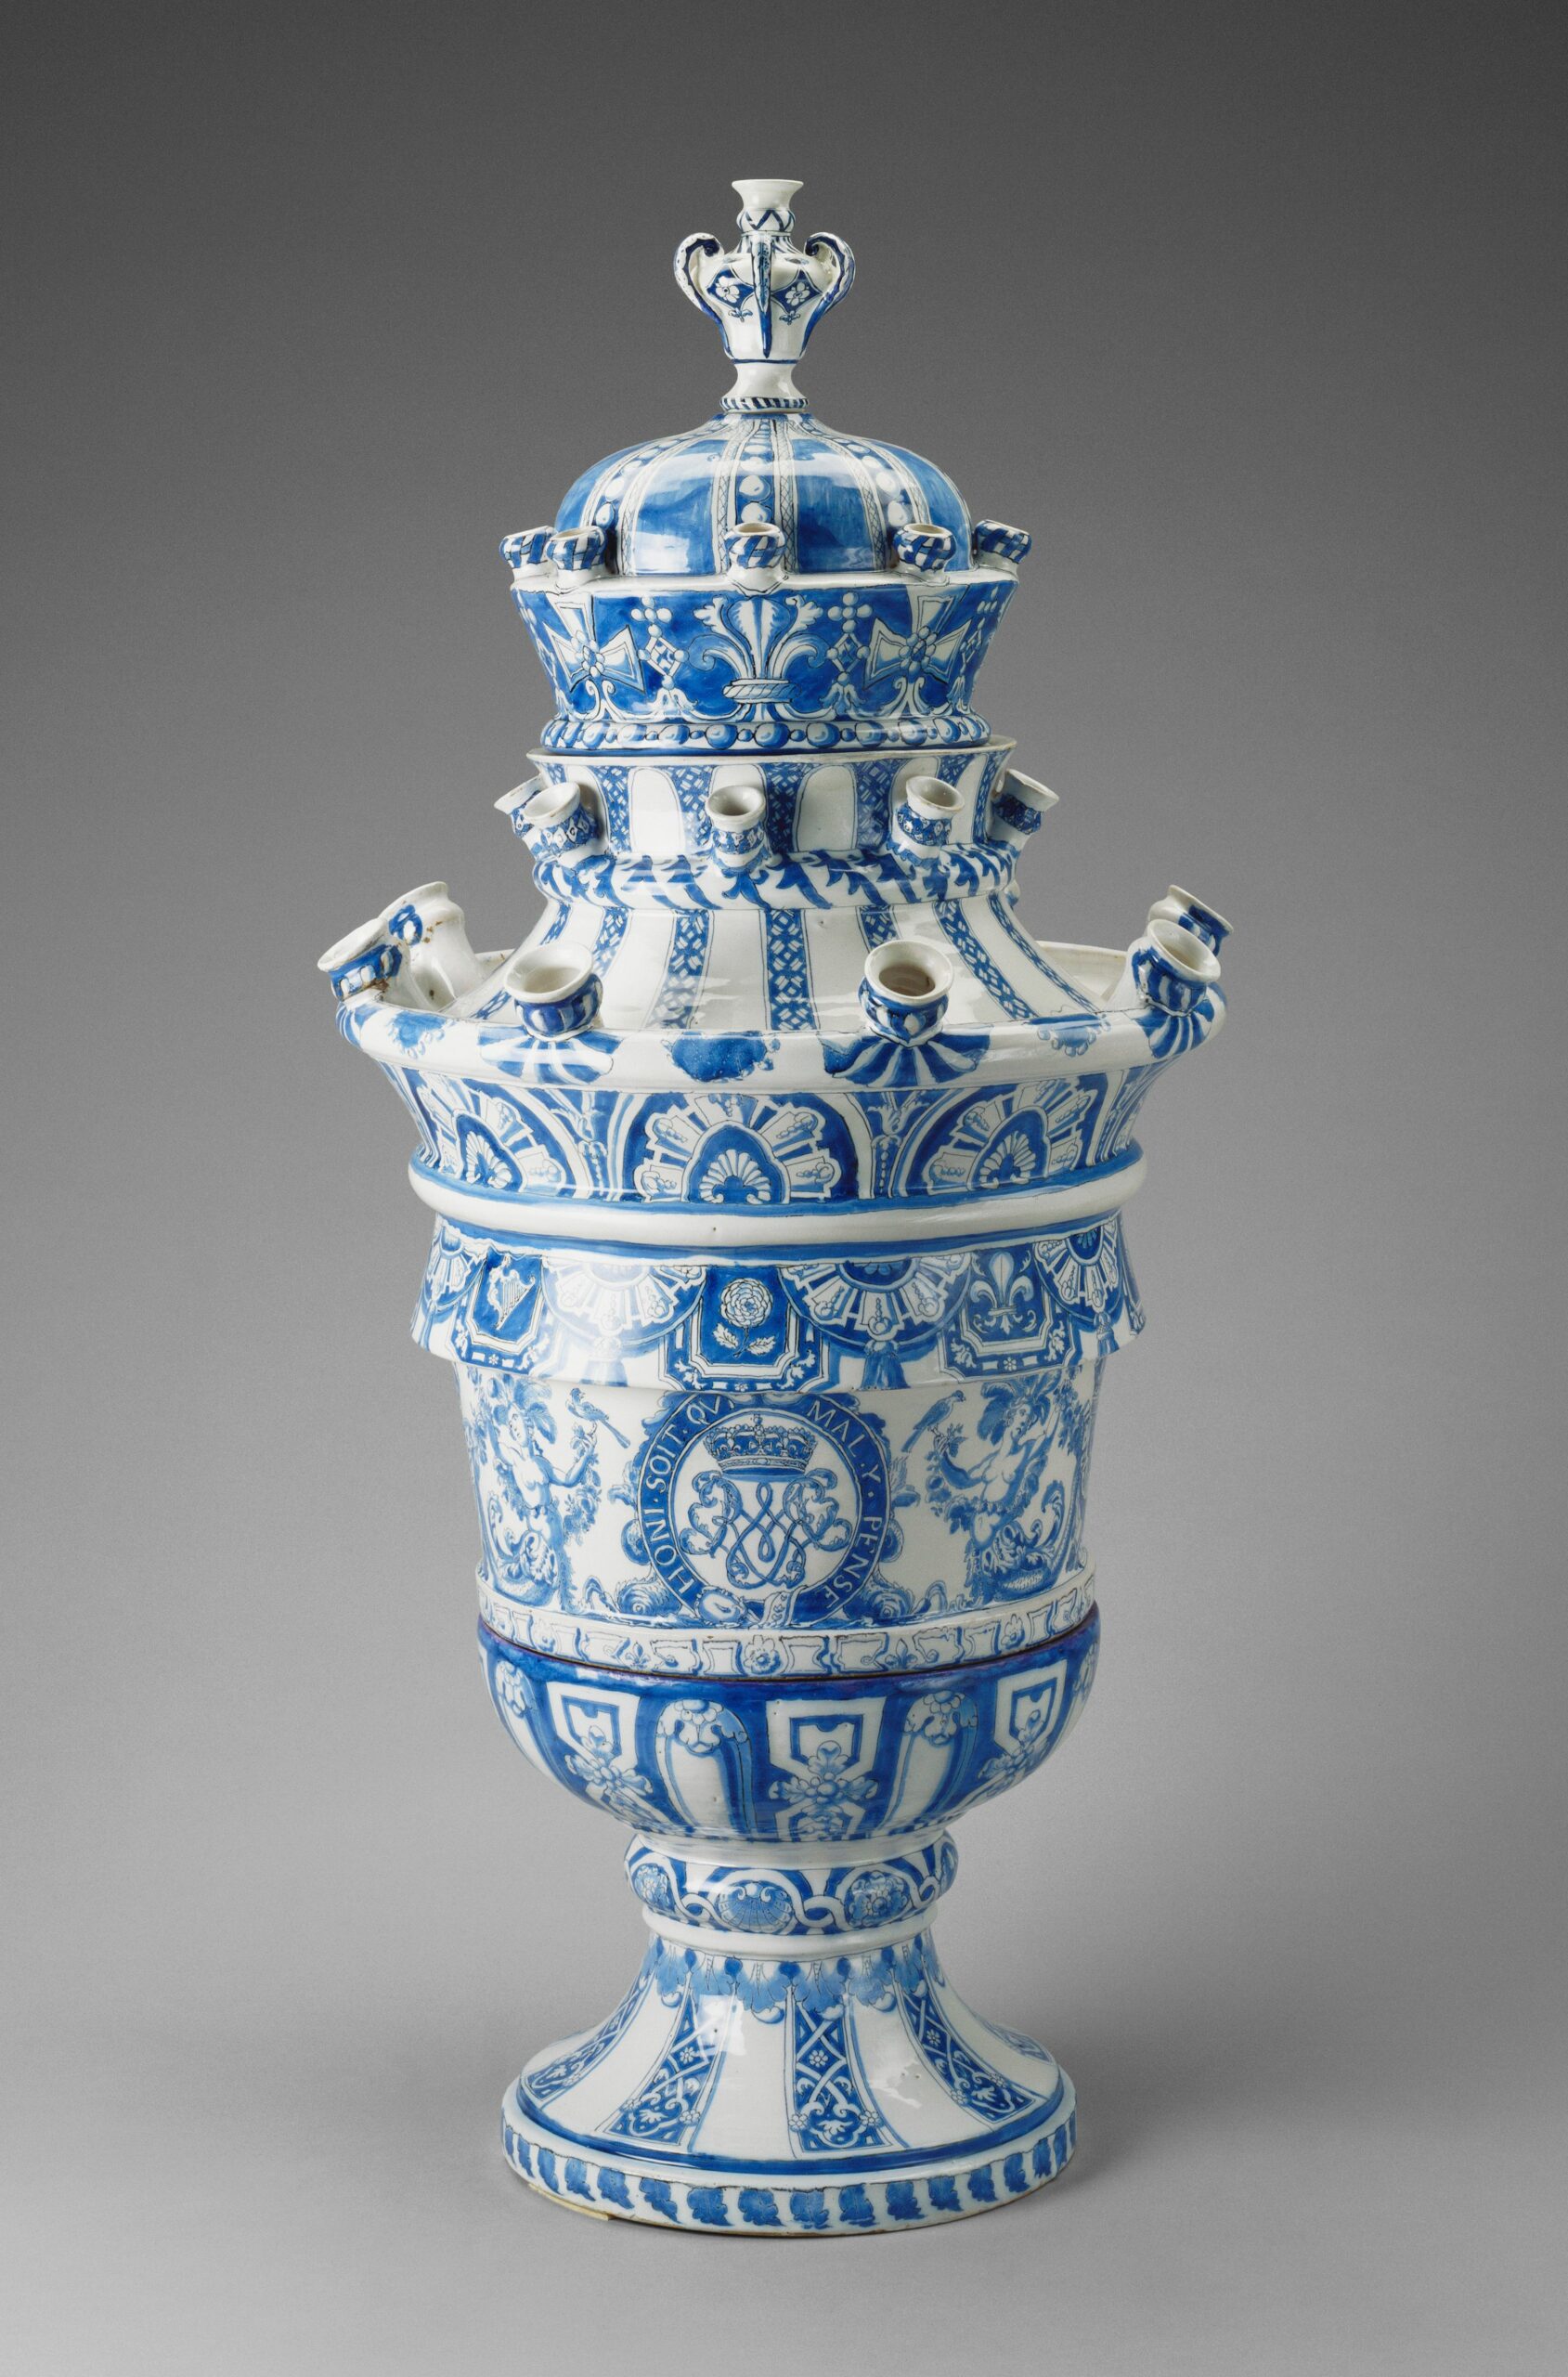 一对郁金香花瓶之一，约1689-1694年，Adrianus Kocx，皇家收藏信托(编号:1694)。RCIN 1082)©HM伊丽莎白女王二世2021